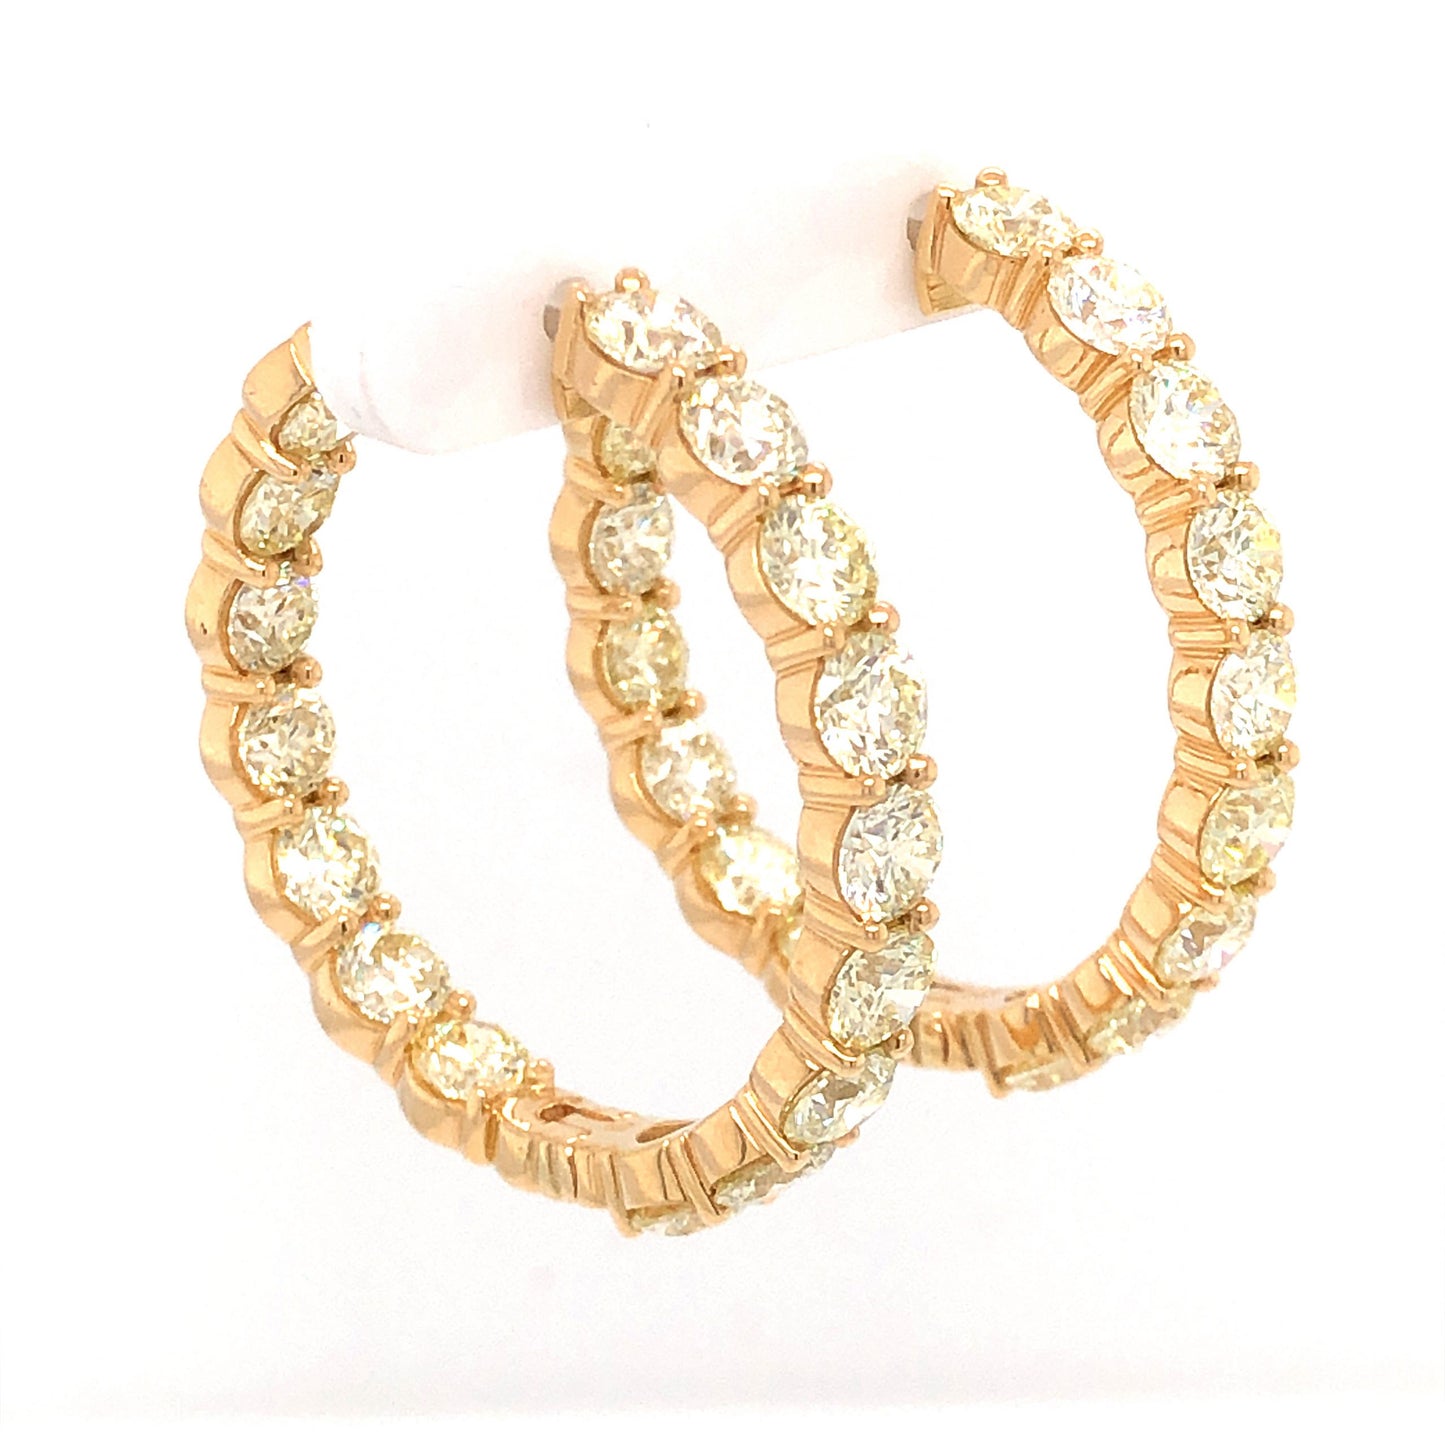 12.80 Carat Diamond Hoop Earrings in 18K Yellow Gold